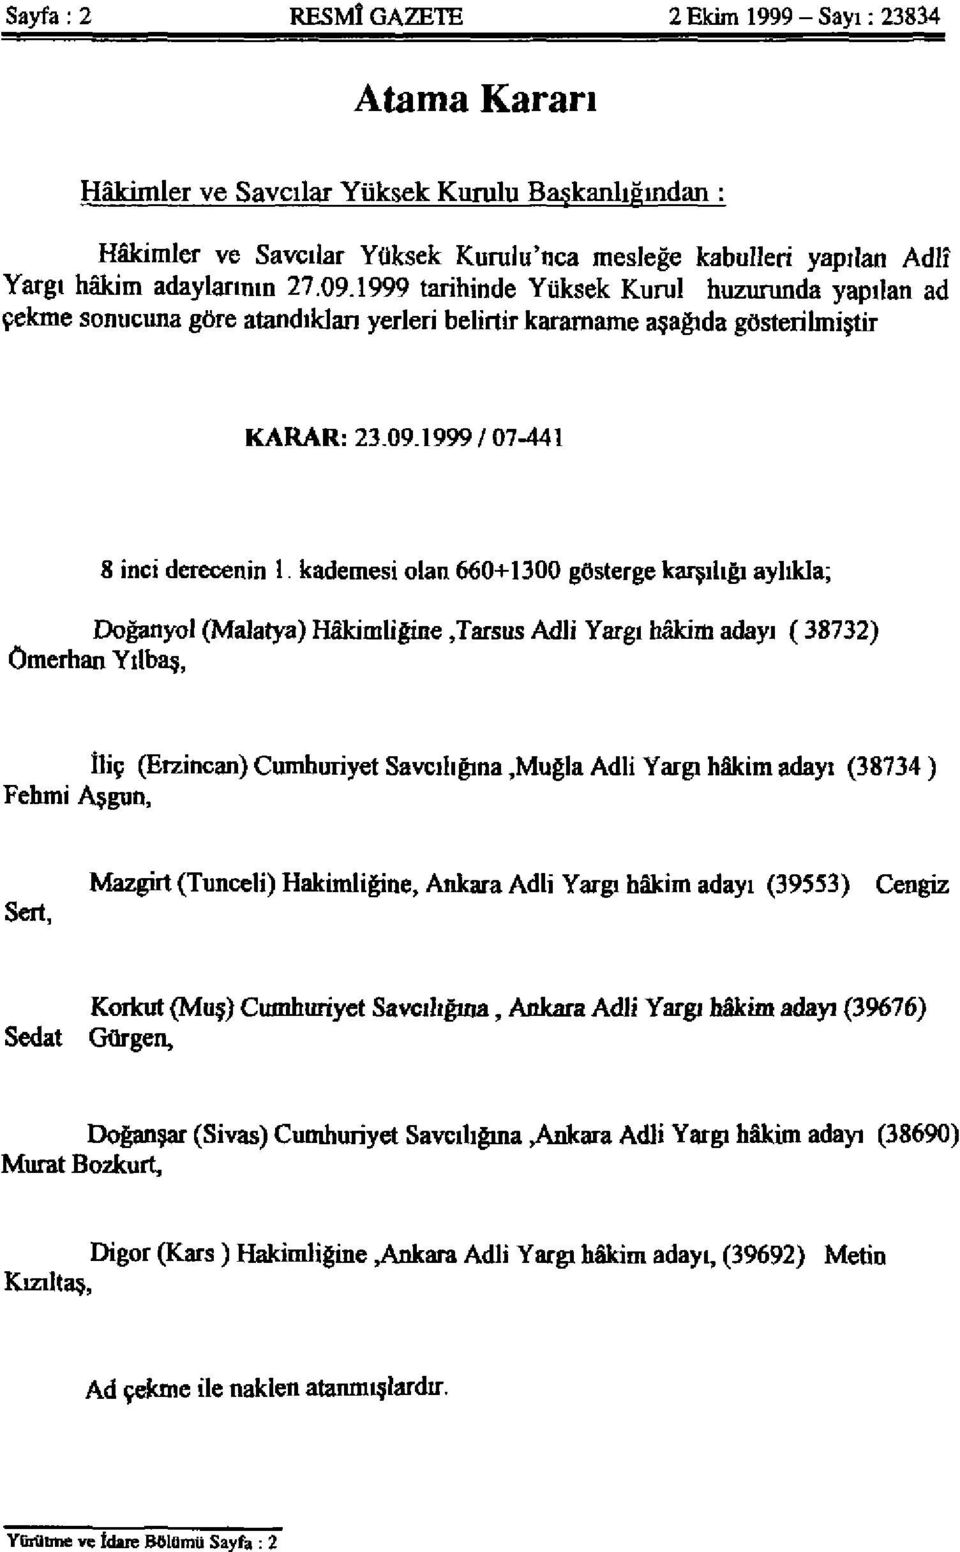 kademesi olan 660+1300 gösterge karşılığı aylıkla; Doğanyol (Malarya) Hâkimliğine,Tarsus Adli Yargı hâkim adayı ( 38732) Ömerhan Yılbaş, İliç (Erzincan) Cumhuriyet Savcılığına,Muğla Adli Yargı hâkim